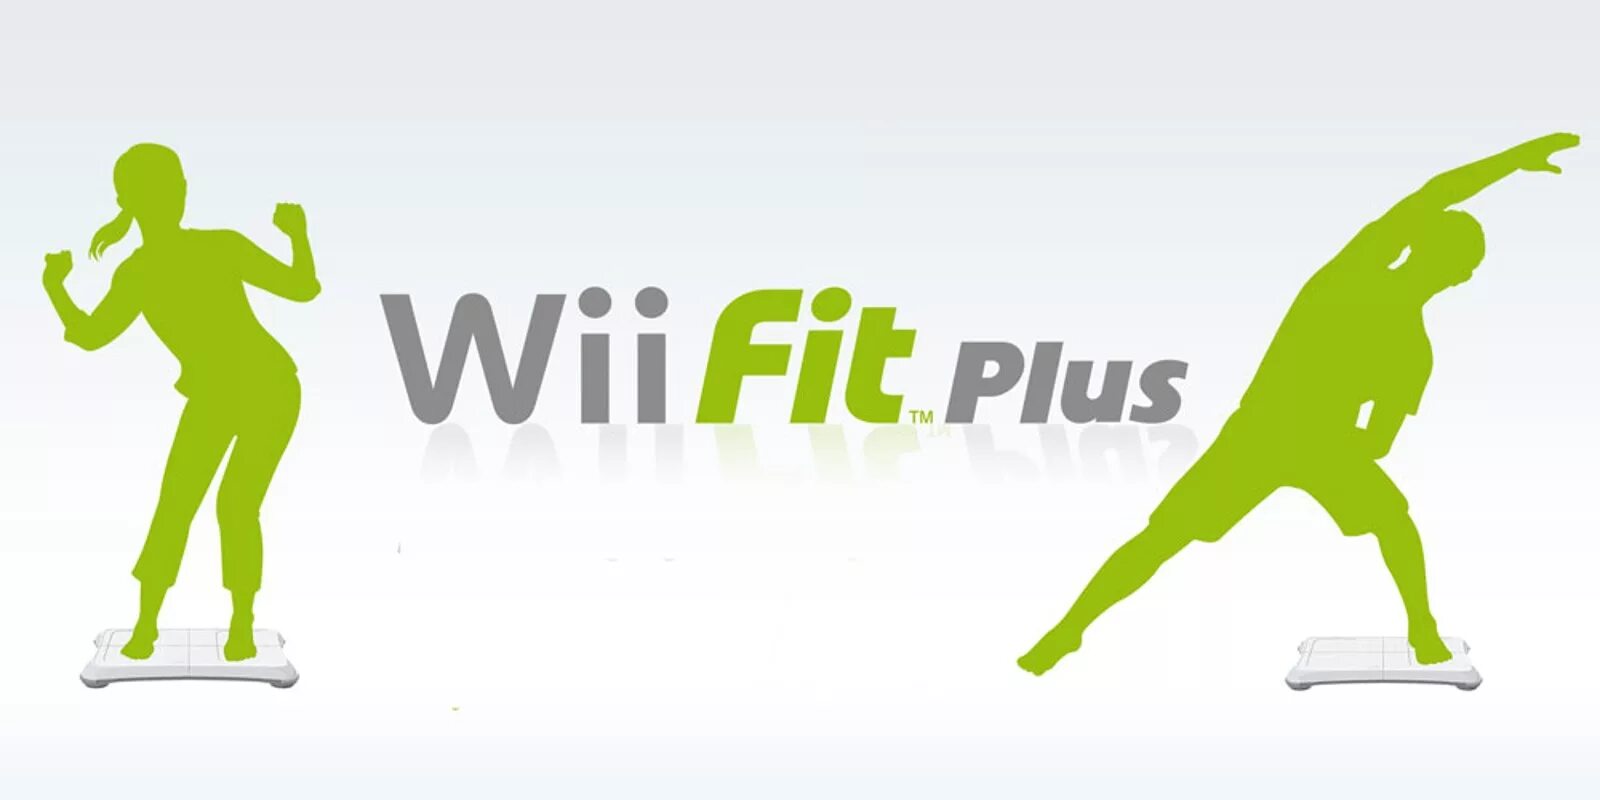 Wii fit. Nintendo Wii Fit. Wii Fit Plus. Wii Fit Plus игры. Игра Wii Fit Plus для Nintendo Wii.